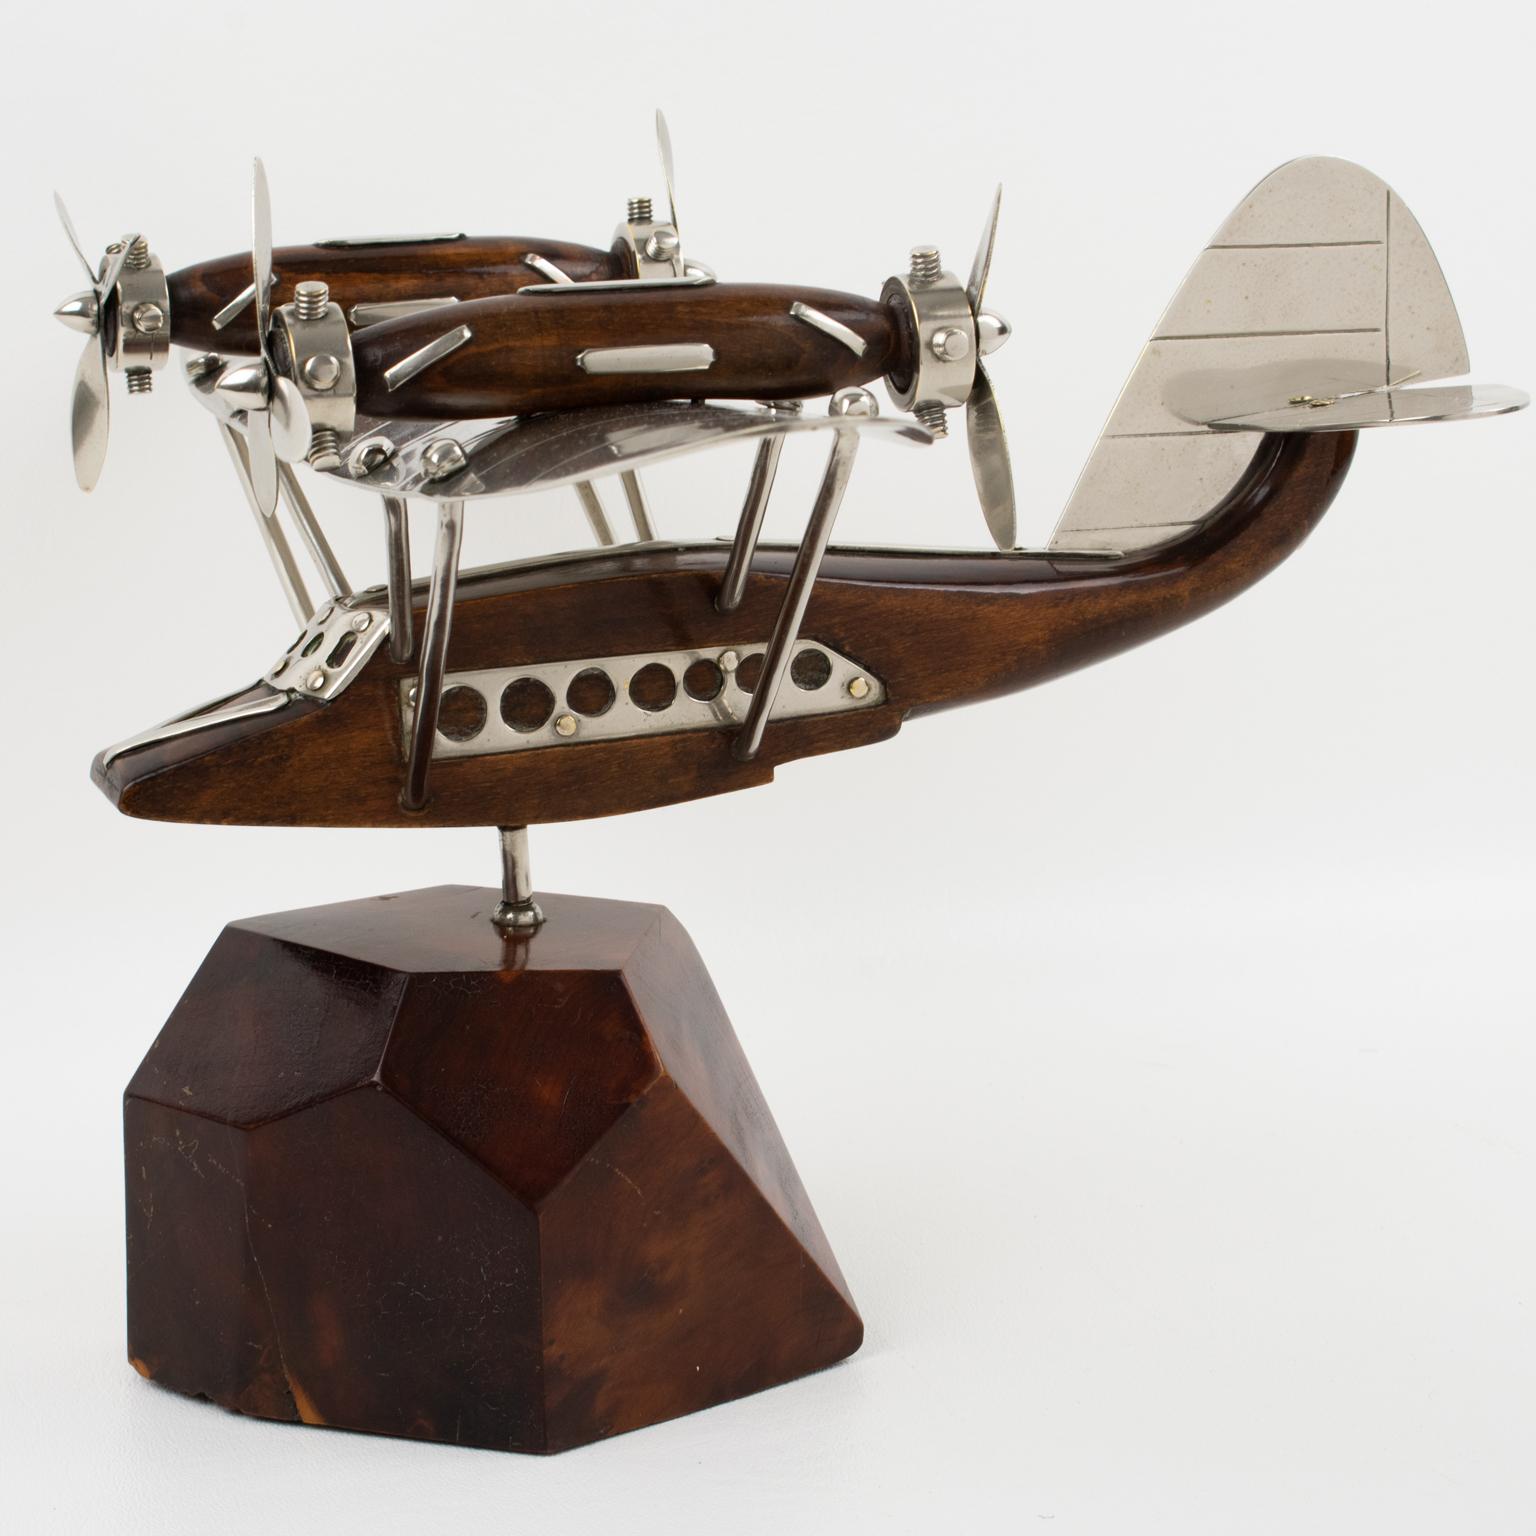 Ein fantastisches französisches Art-Deco-Modell aus Chrom und Holz, montiert auf einem stilisierten Holzsockel. Eine hervorragend gestaltete Darstellung des legendären Wasserflugzeugs mit vier Propellern, die eindrucksvoll an ein goldenes Zeitalter